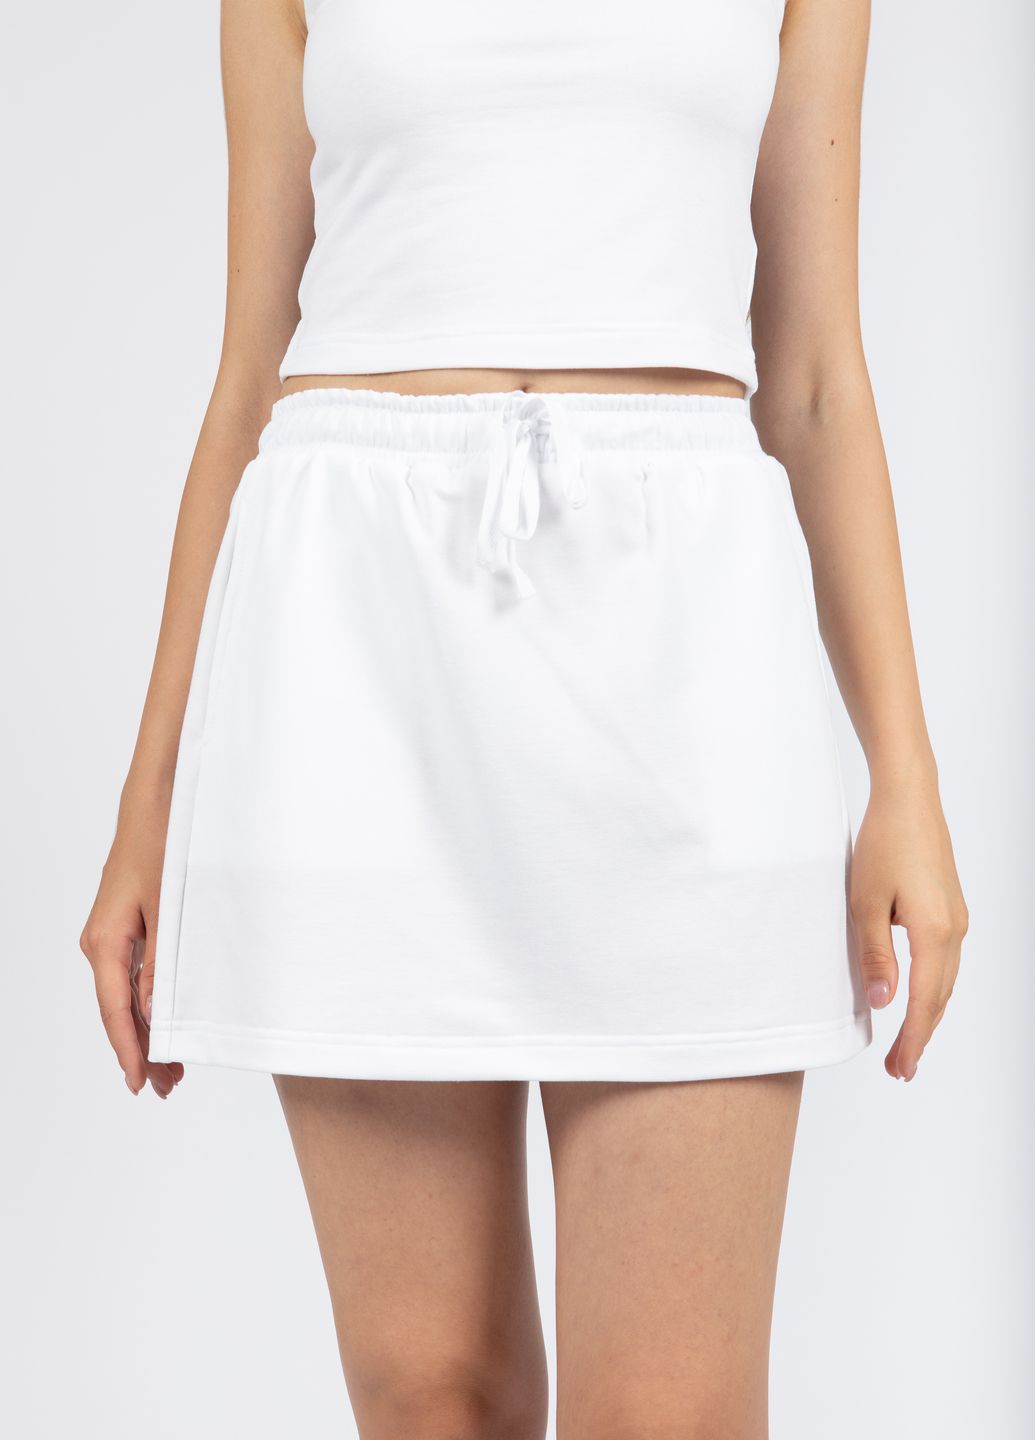 Купить Мини юбка Merlini Кале 400000005 - Белый, 42-44 в интернет-магазине